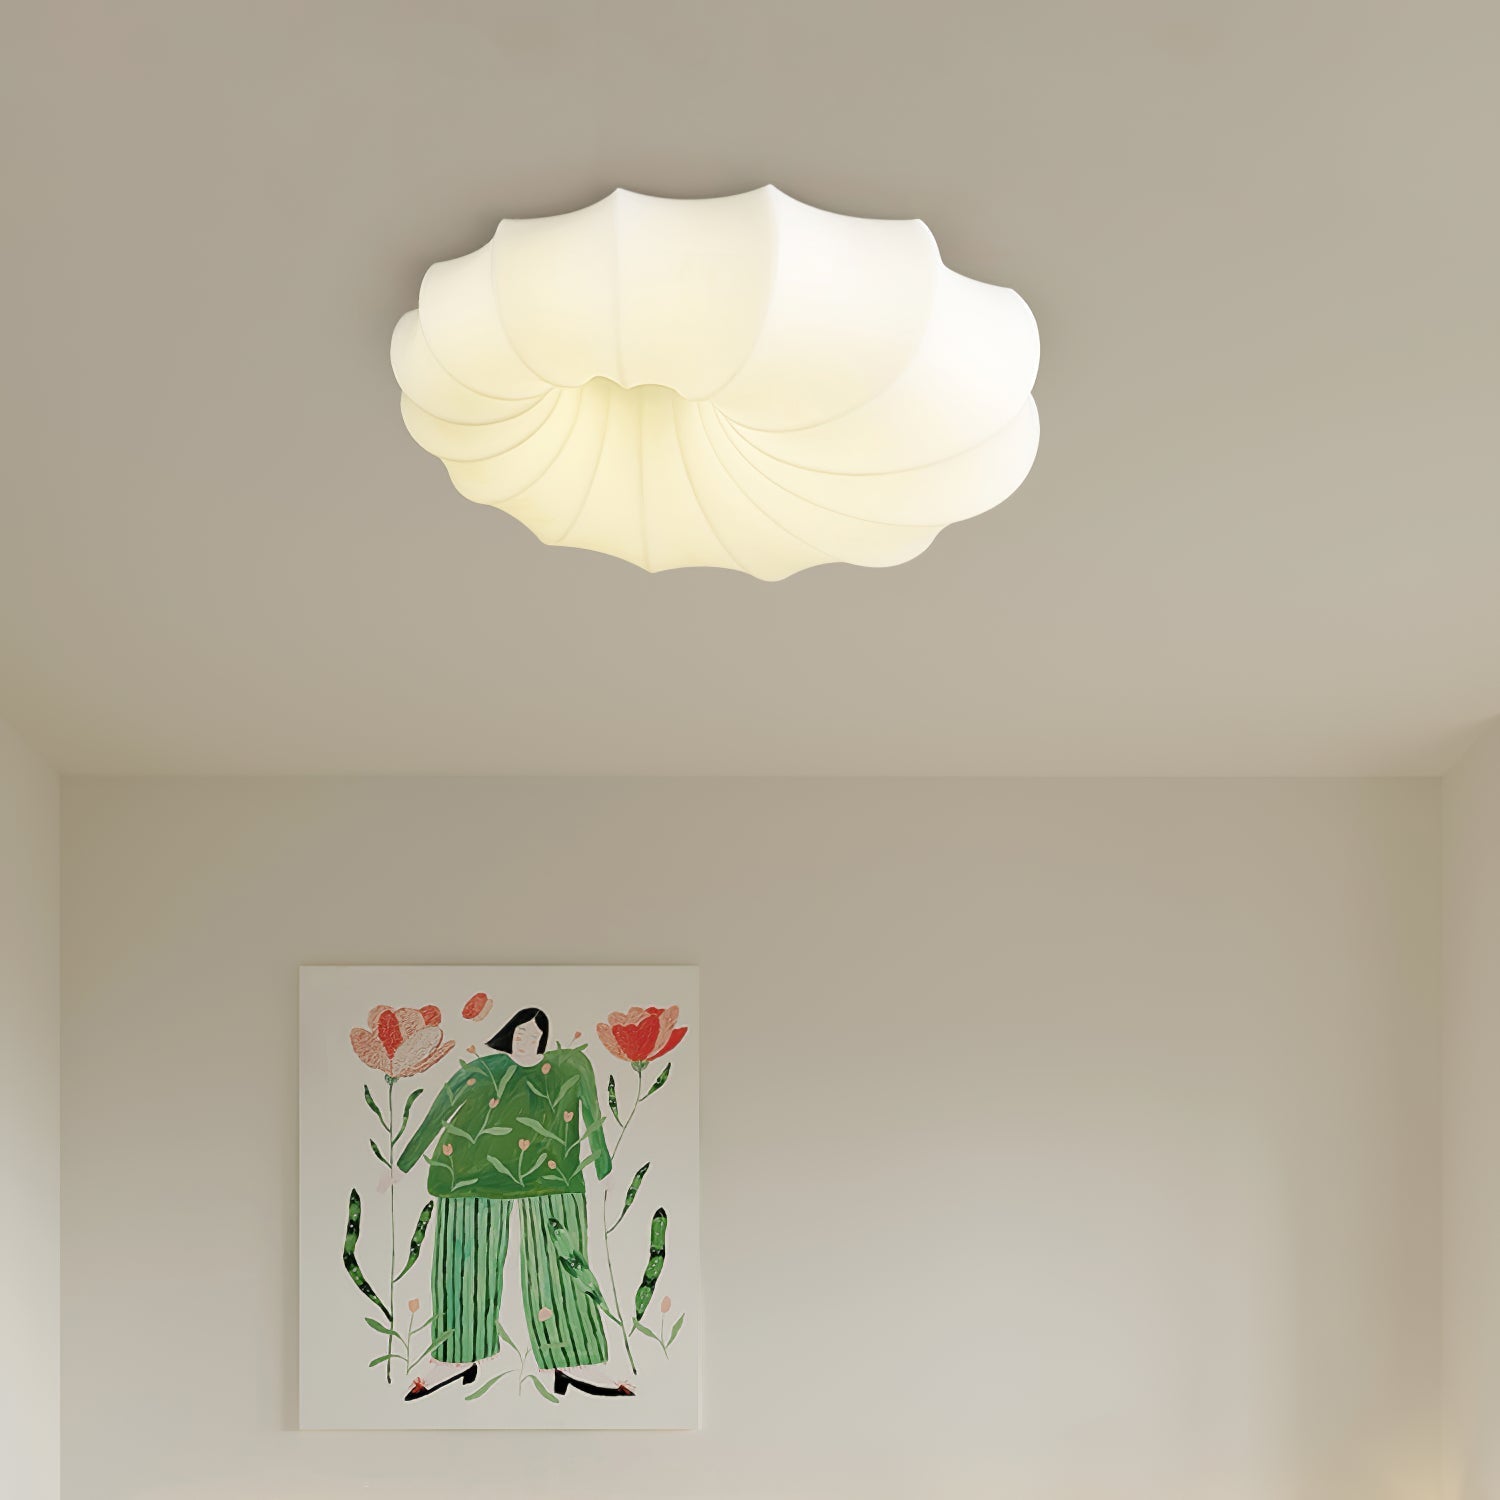 White Bubble Cloud Pendant Lamp & Ceiling Lamp